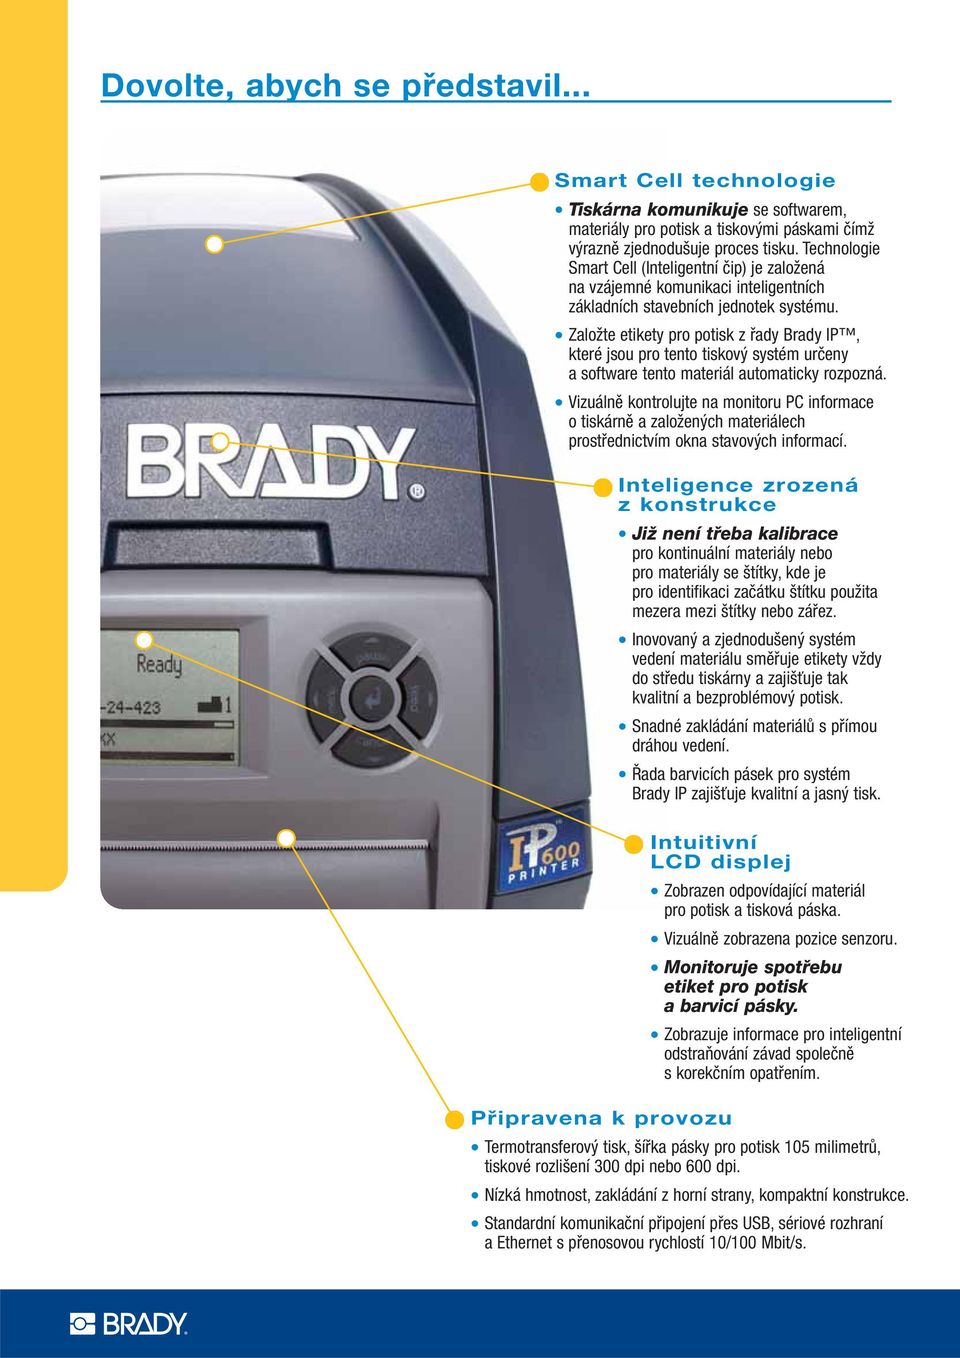 Založte etikety pro potisk z řady Brady IP, které jsou pro tento tiskový systém určeny a software tento materiál automaticky rozpozná.